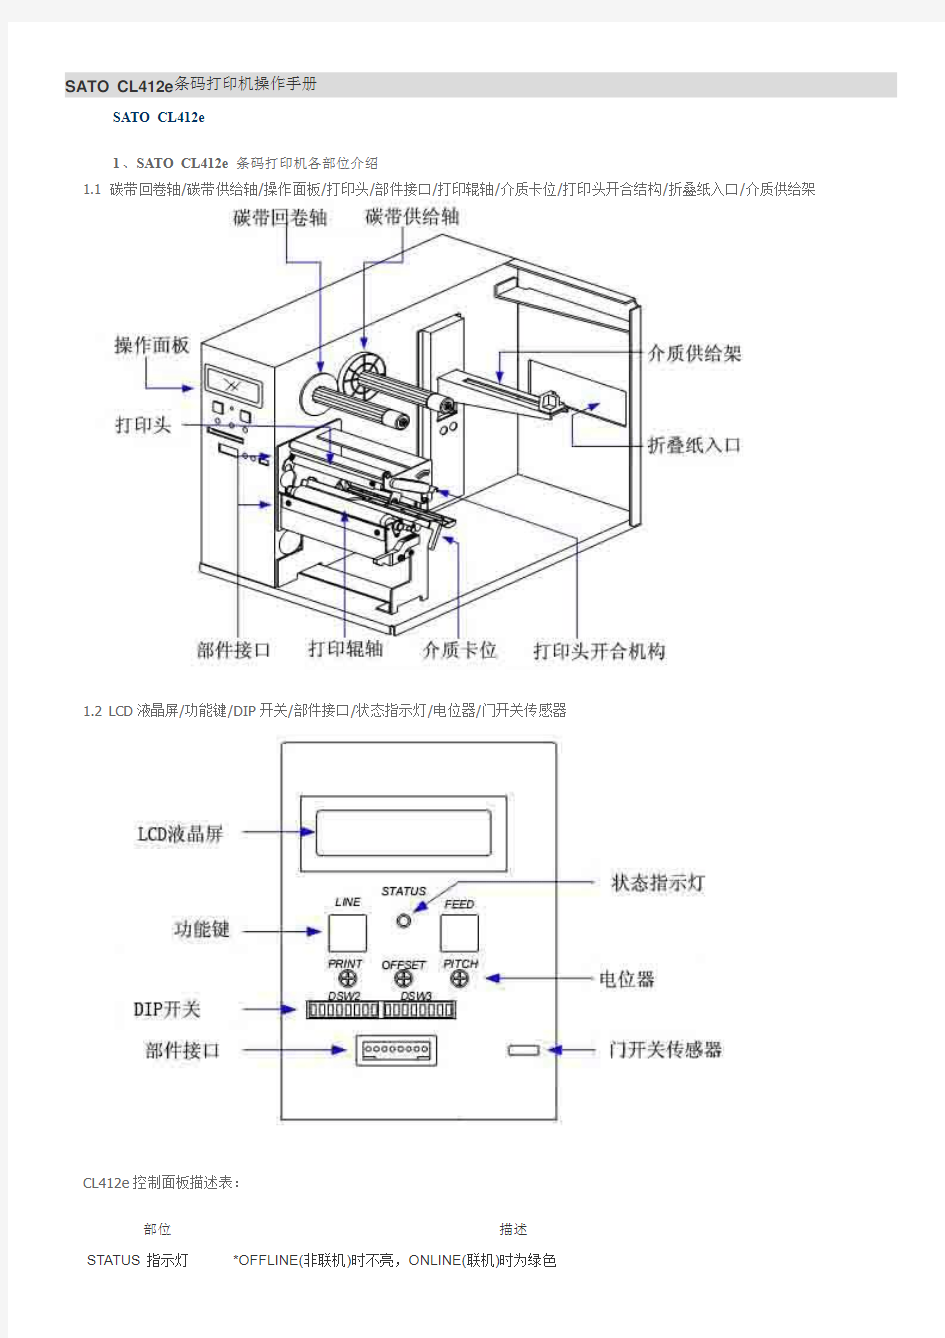 SATO CL412e条码打印机操作手册